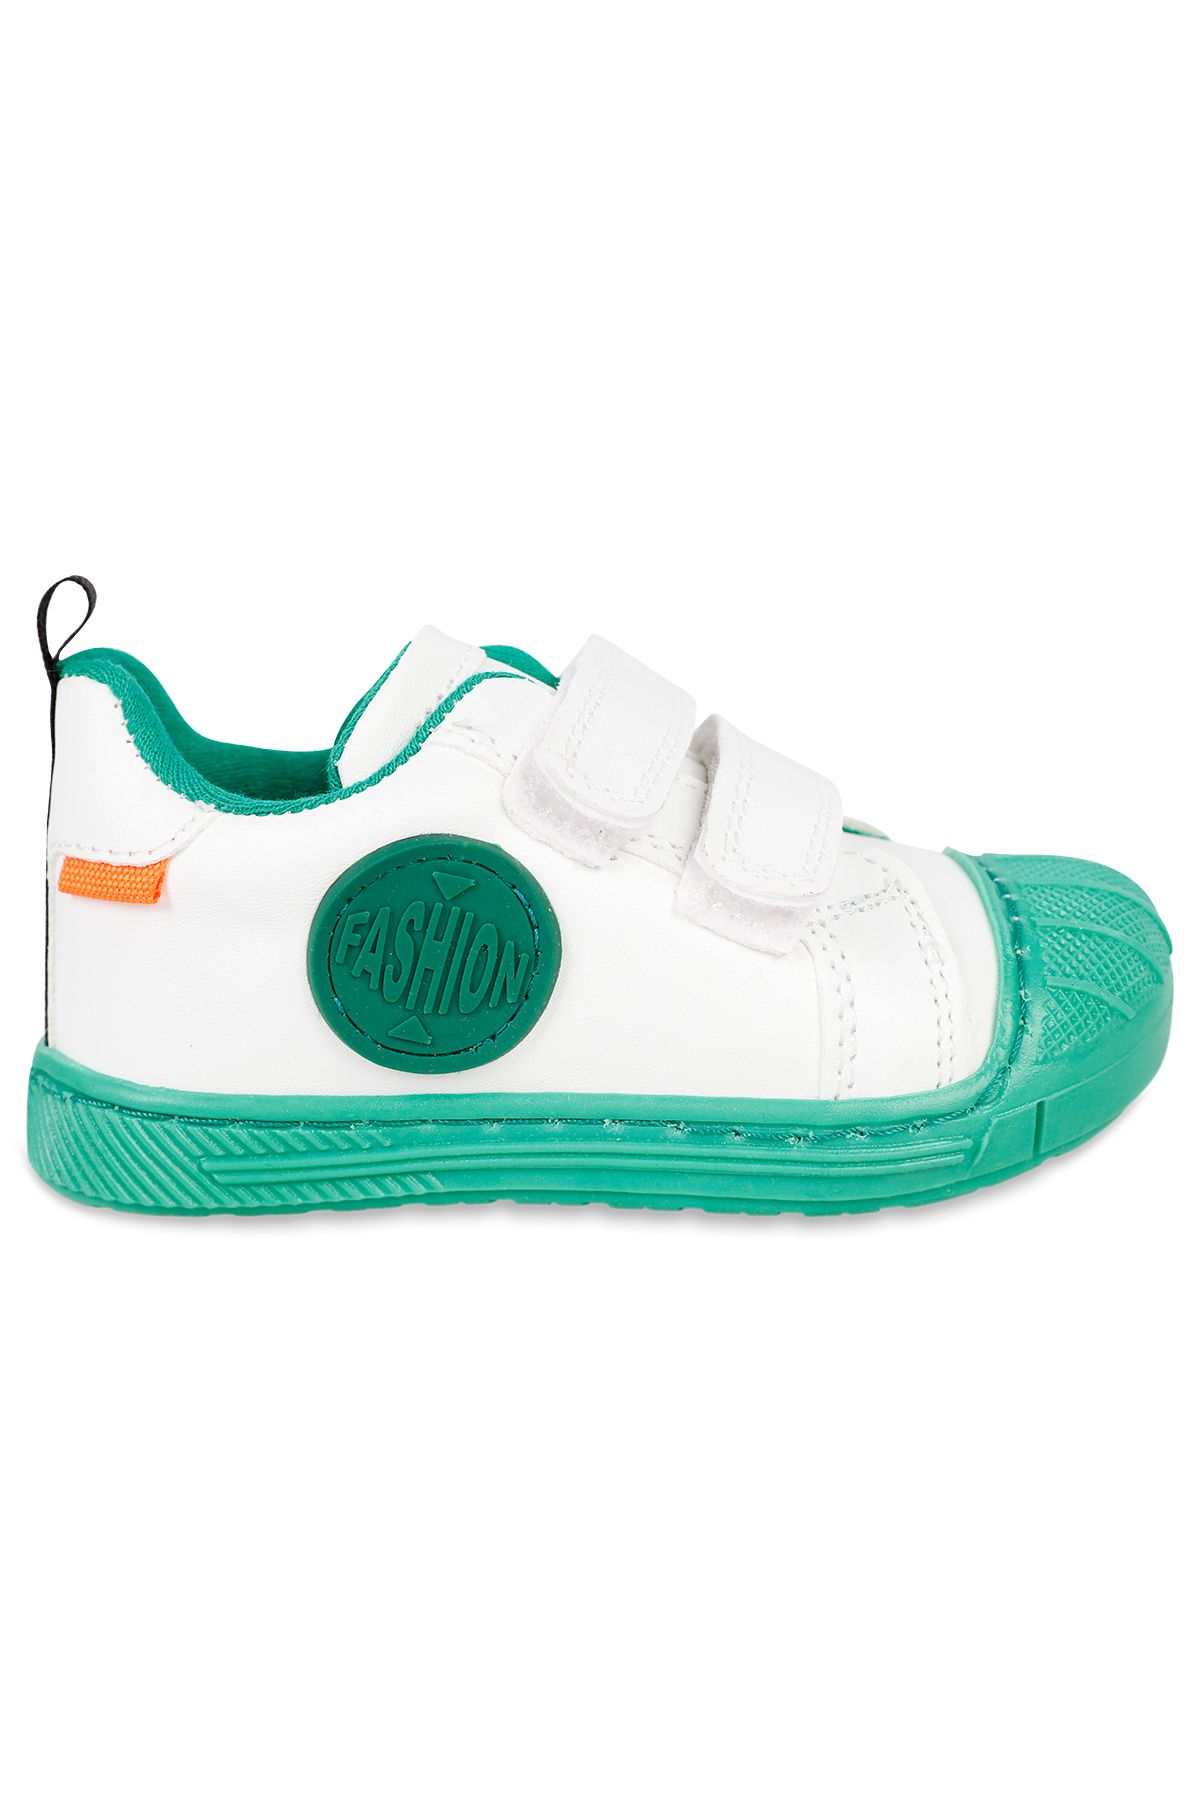 Civil Erkek Çocuk Spor Ayakkabı 21-25 Numara Beyaz-Yeşil